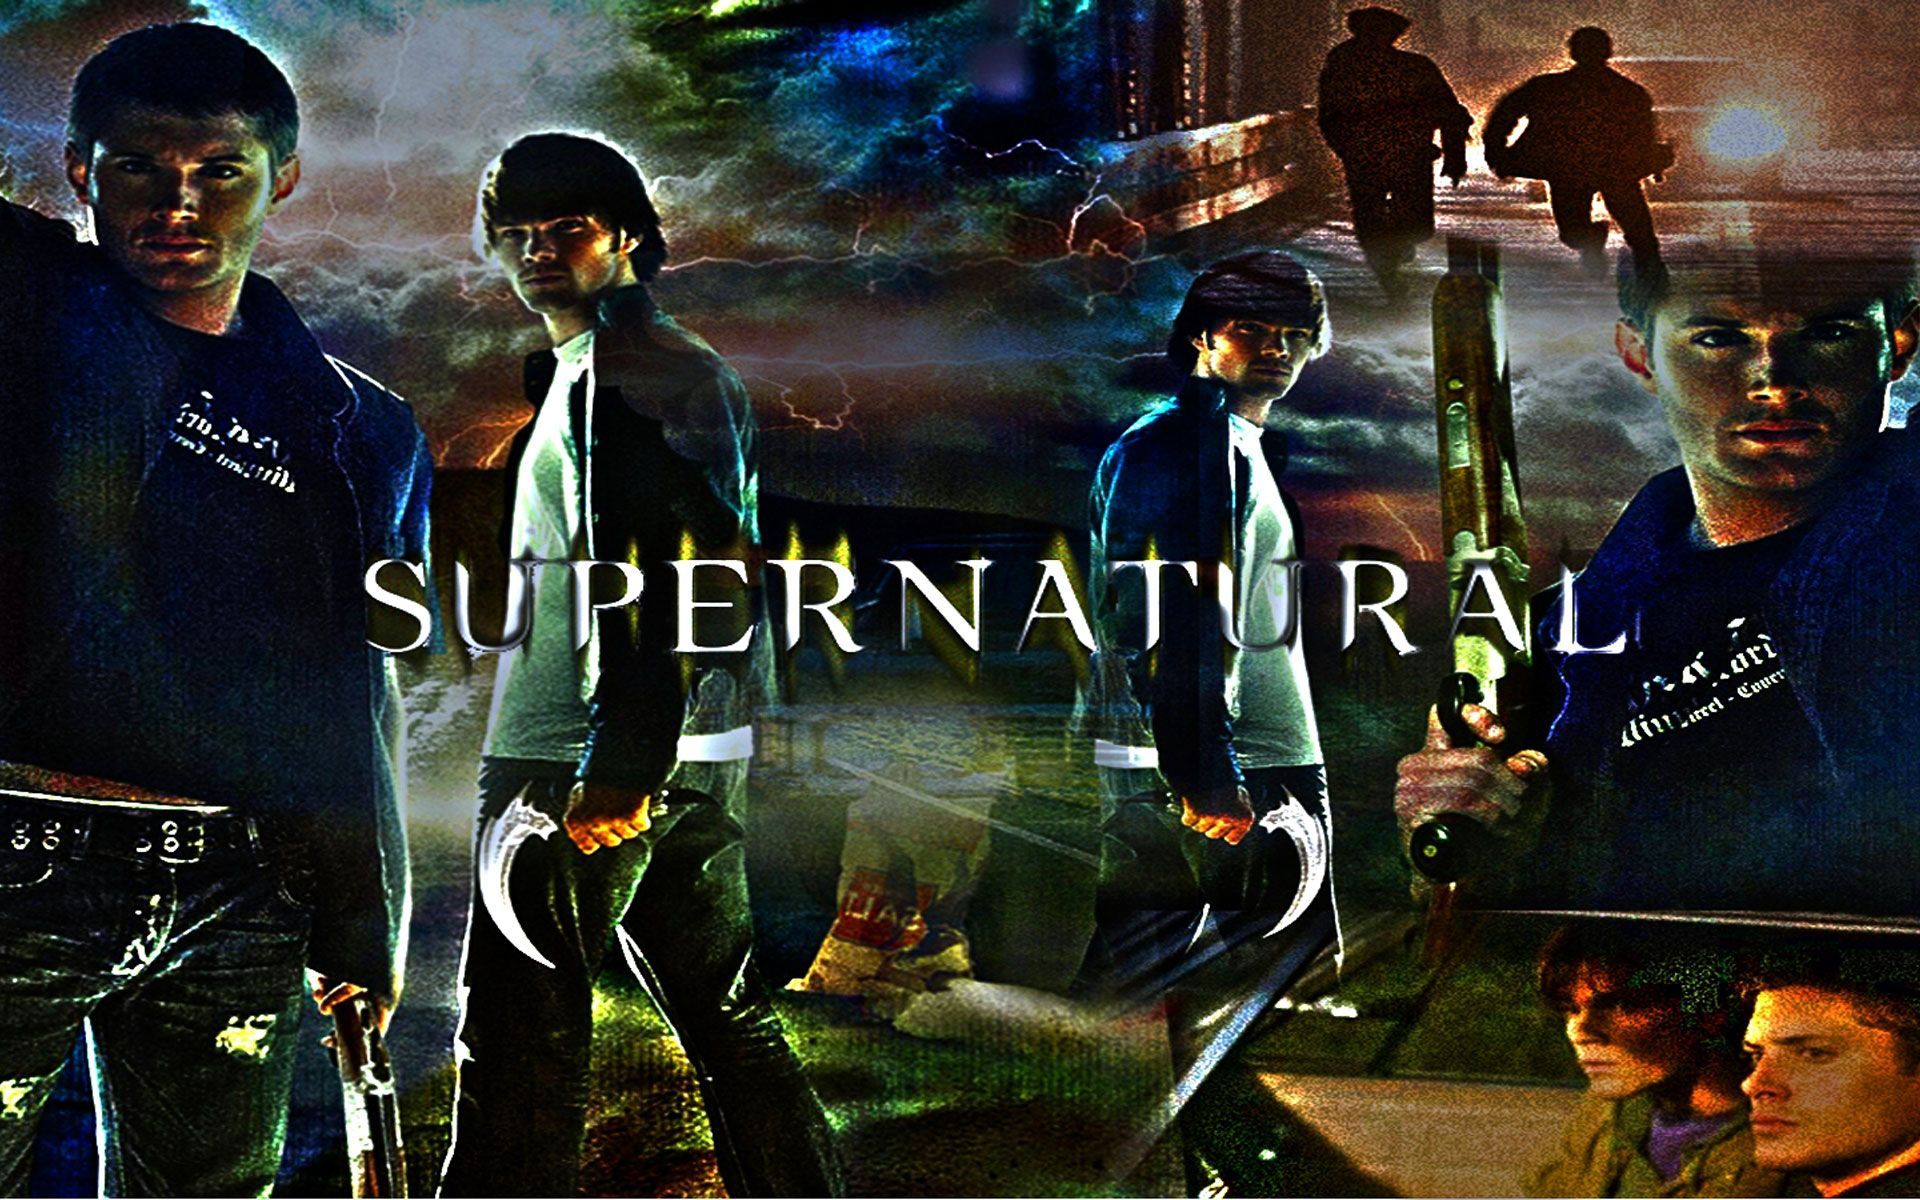 Supernatural TV Show Wallpaper iWallpaper.Top - Good HD